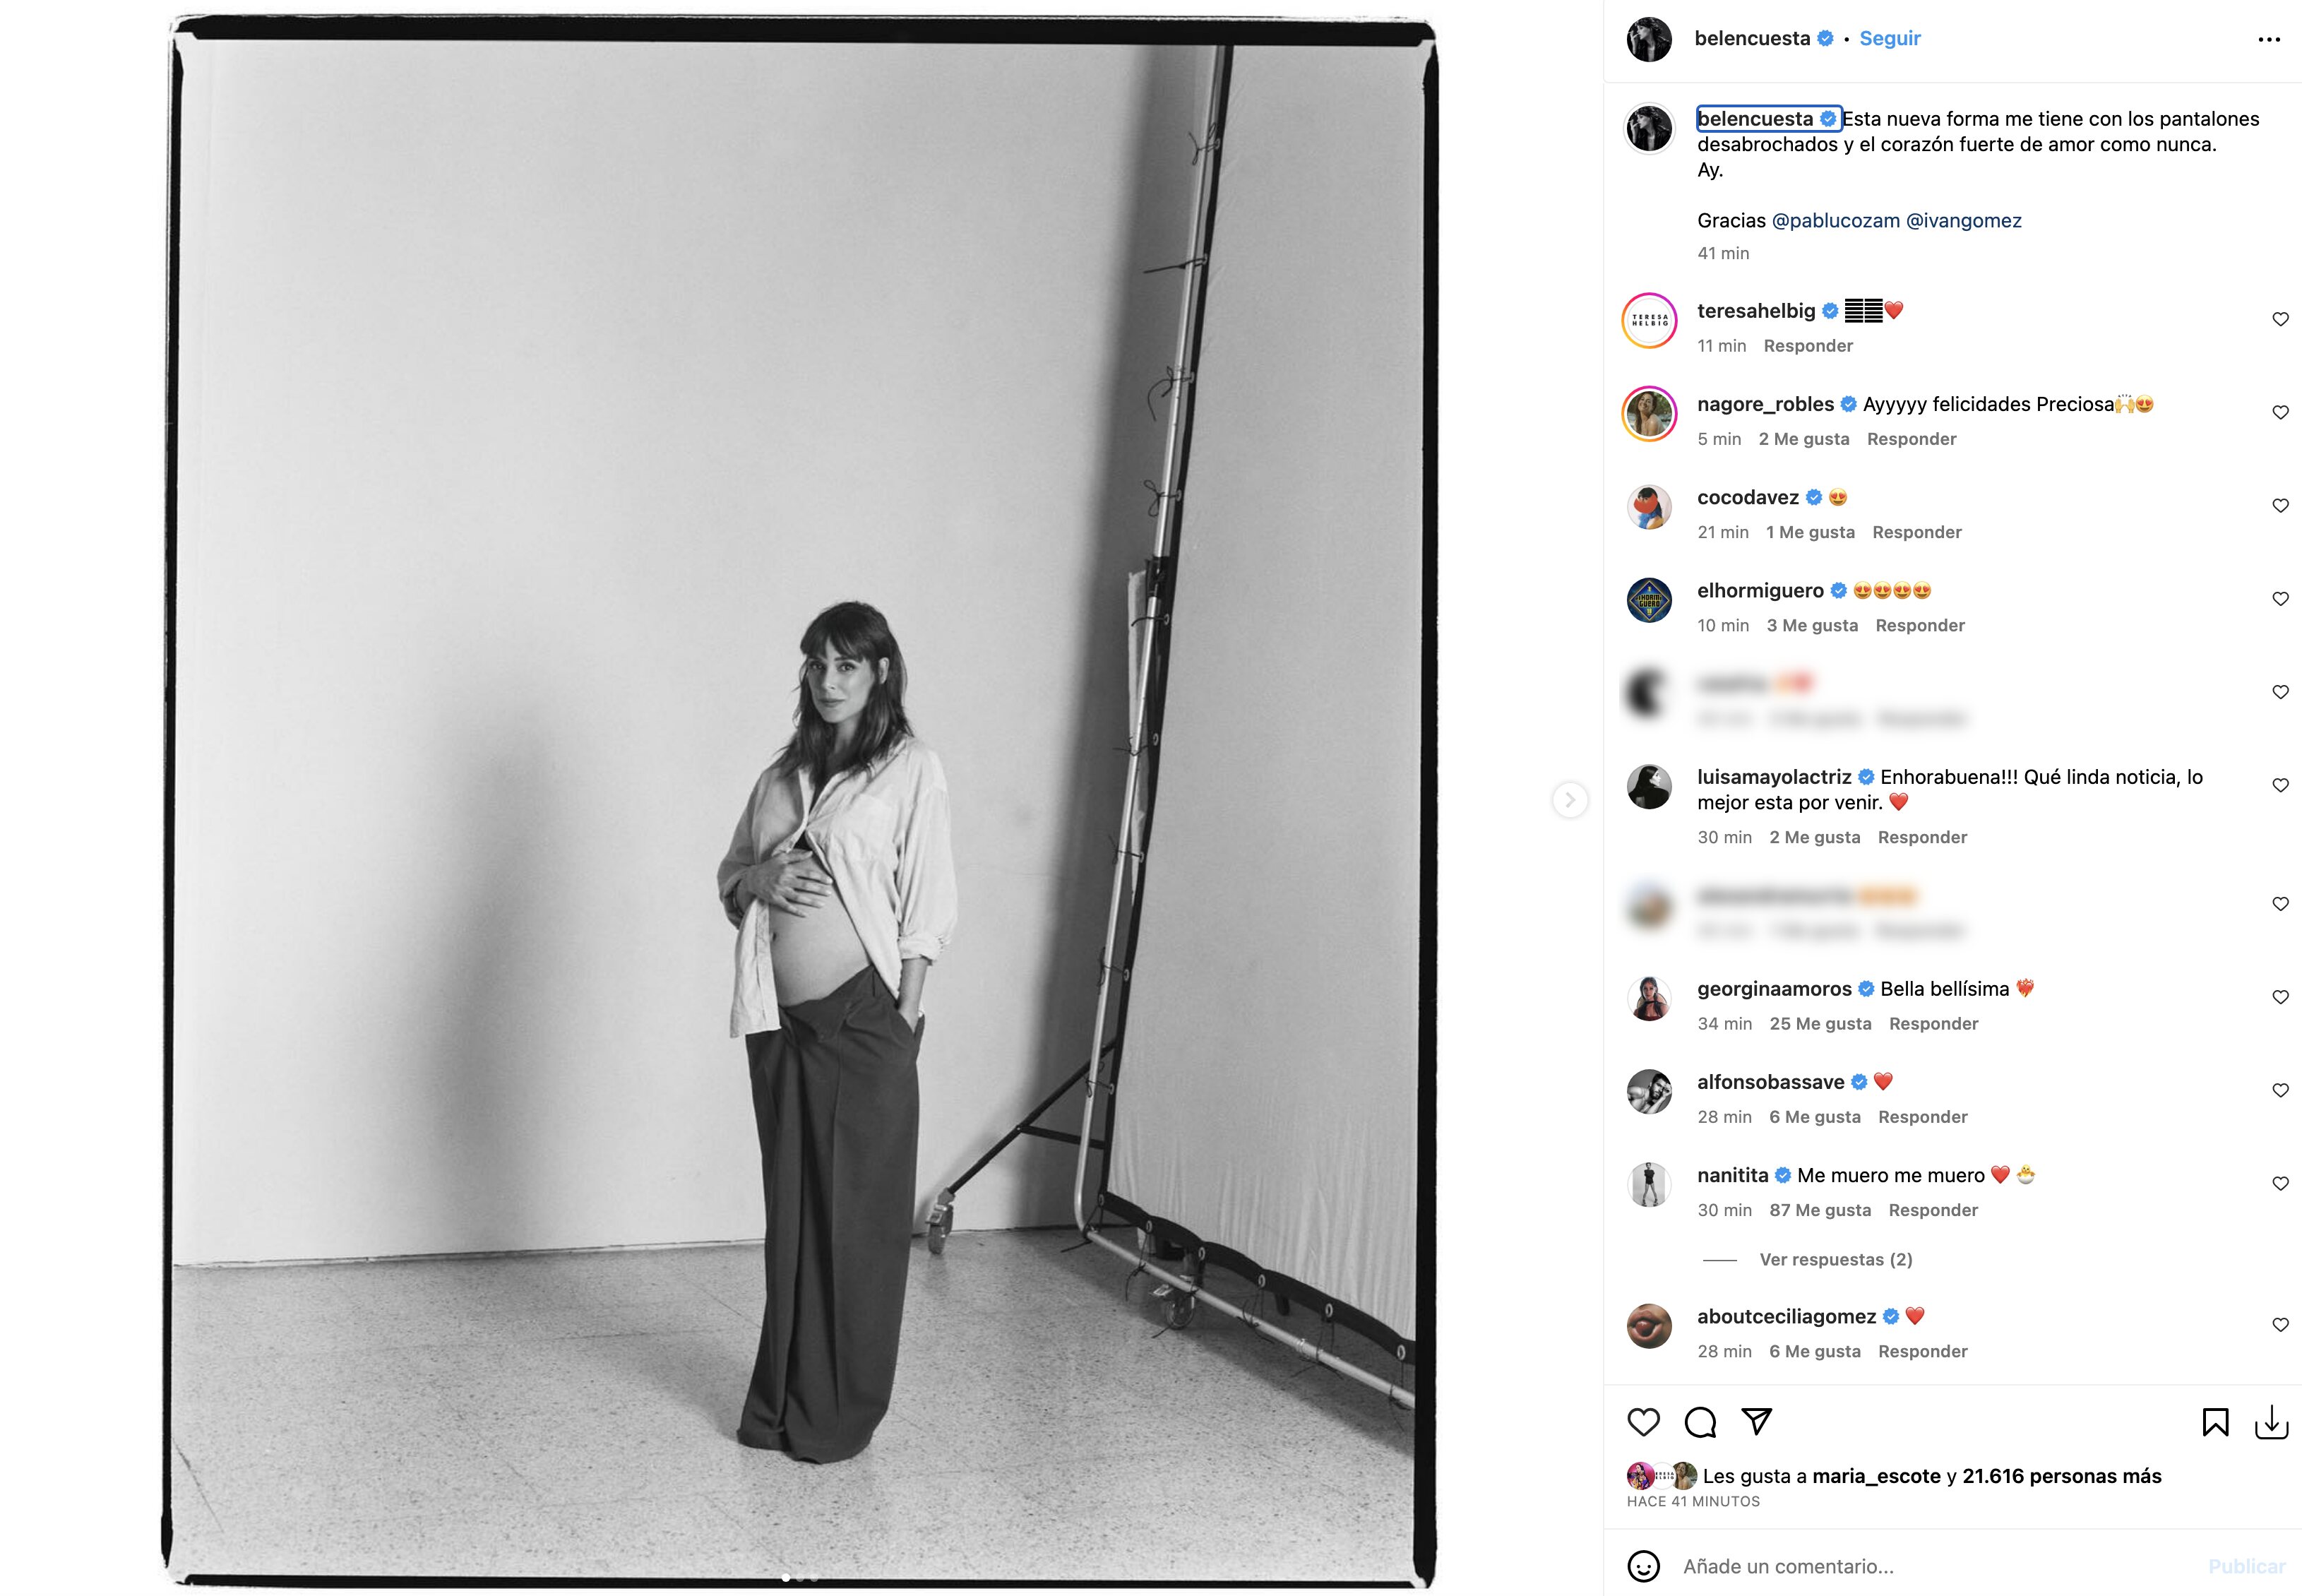 La foto con la que Belén Cuesta ha anunciado su embarazo | Foto: Instagram | @pablucozam